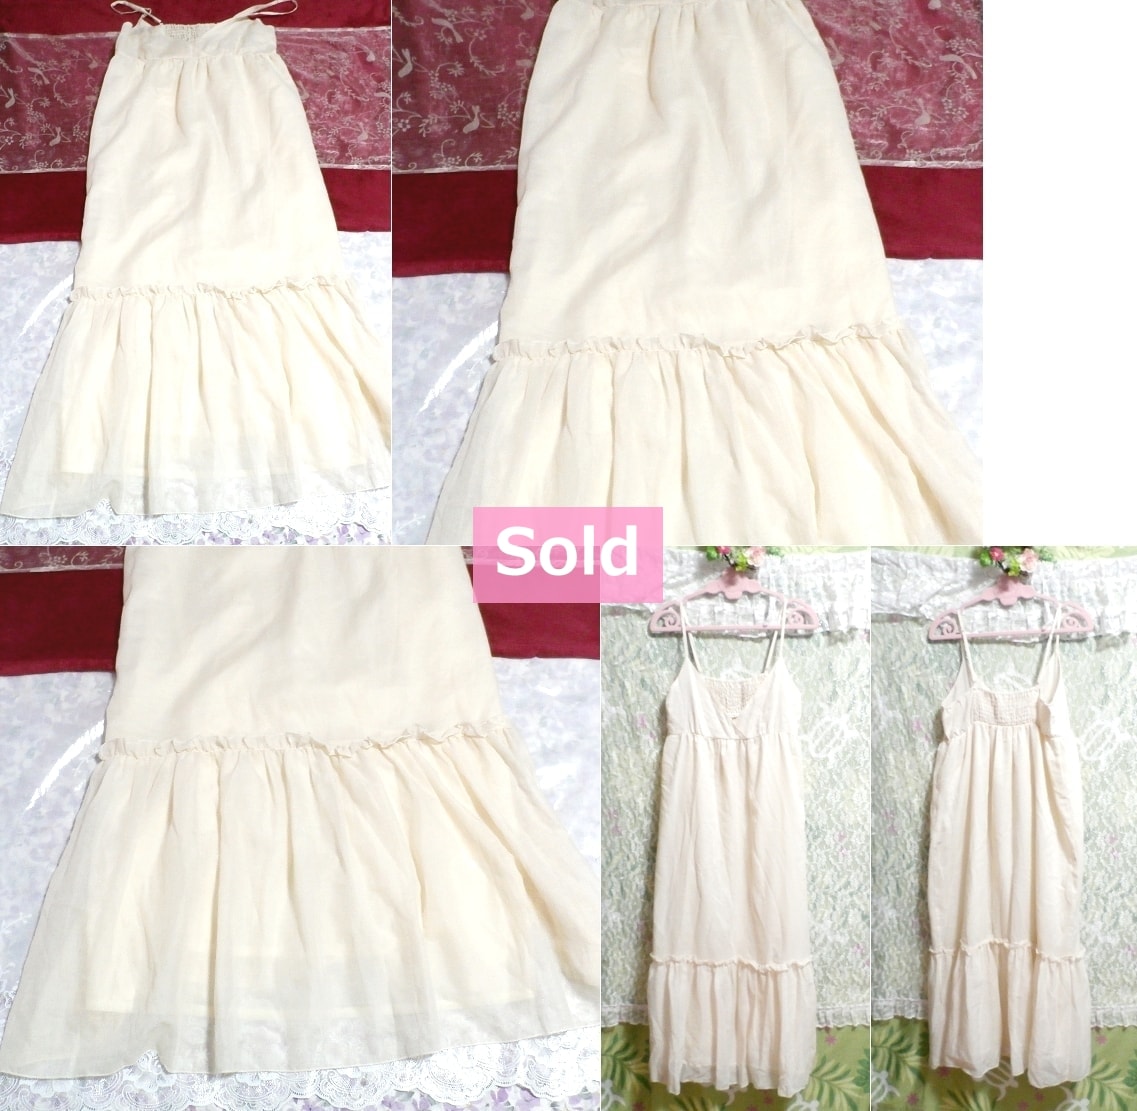 Белая шифоновая макси-юбка с цветочным принтом и белая расклешенная юбка с цветочным принтом Белая пушистая шифоновая макси-юбка с цветочным принтом